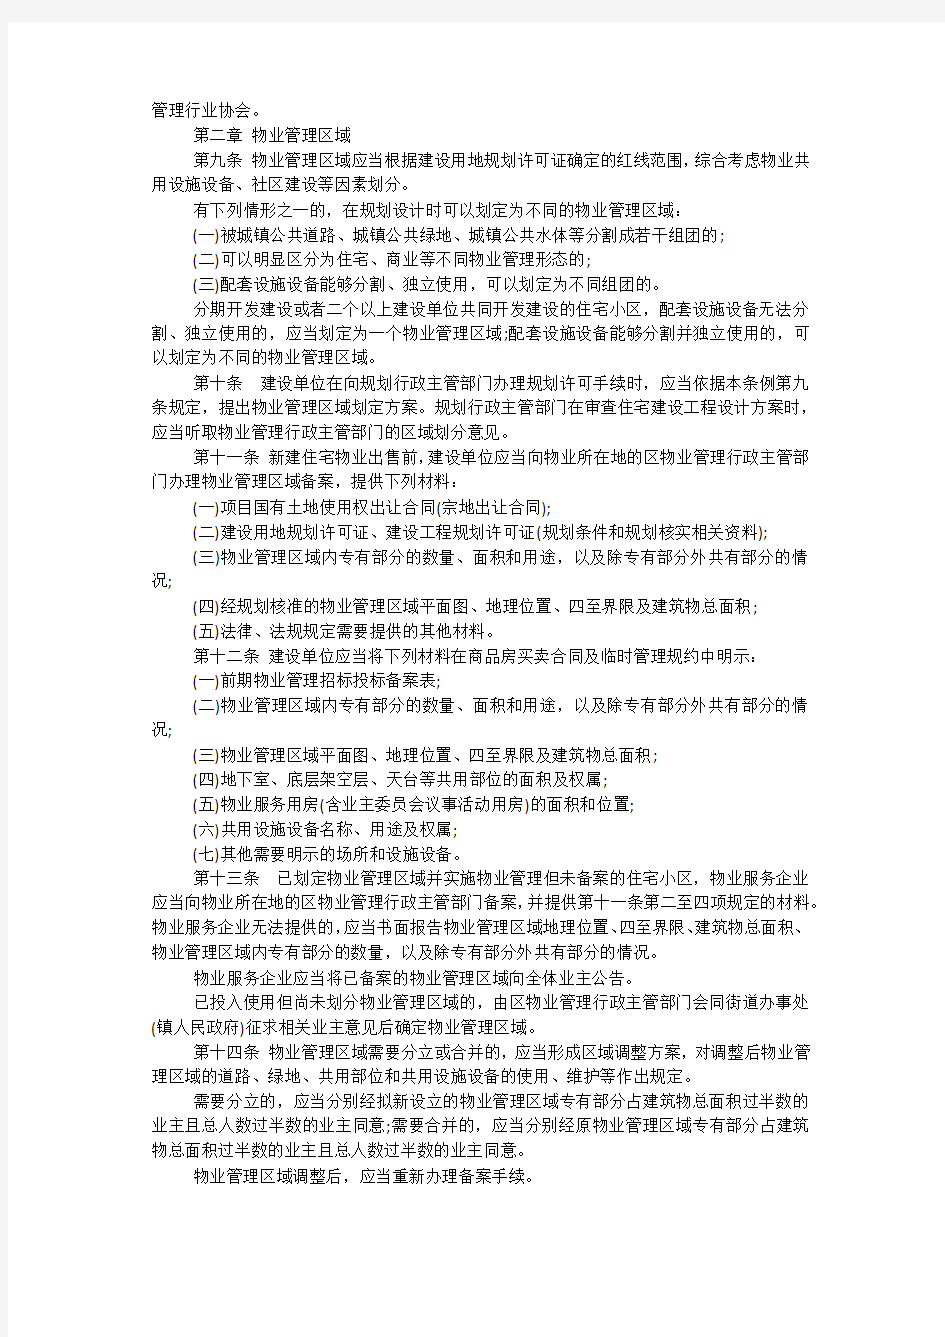 2016南京市物业管理条例